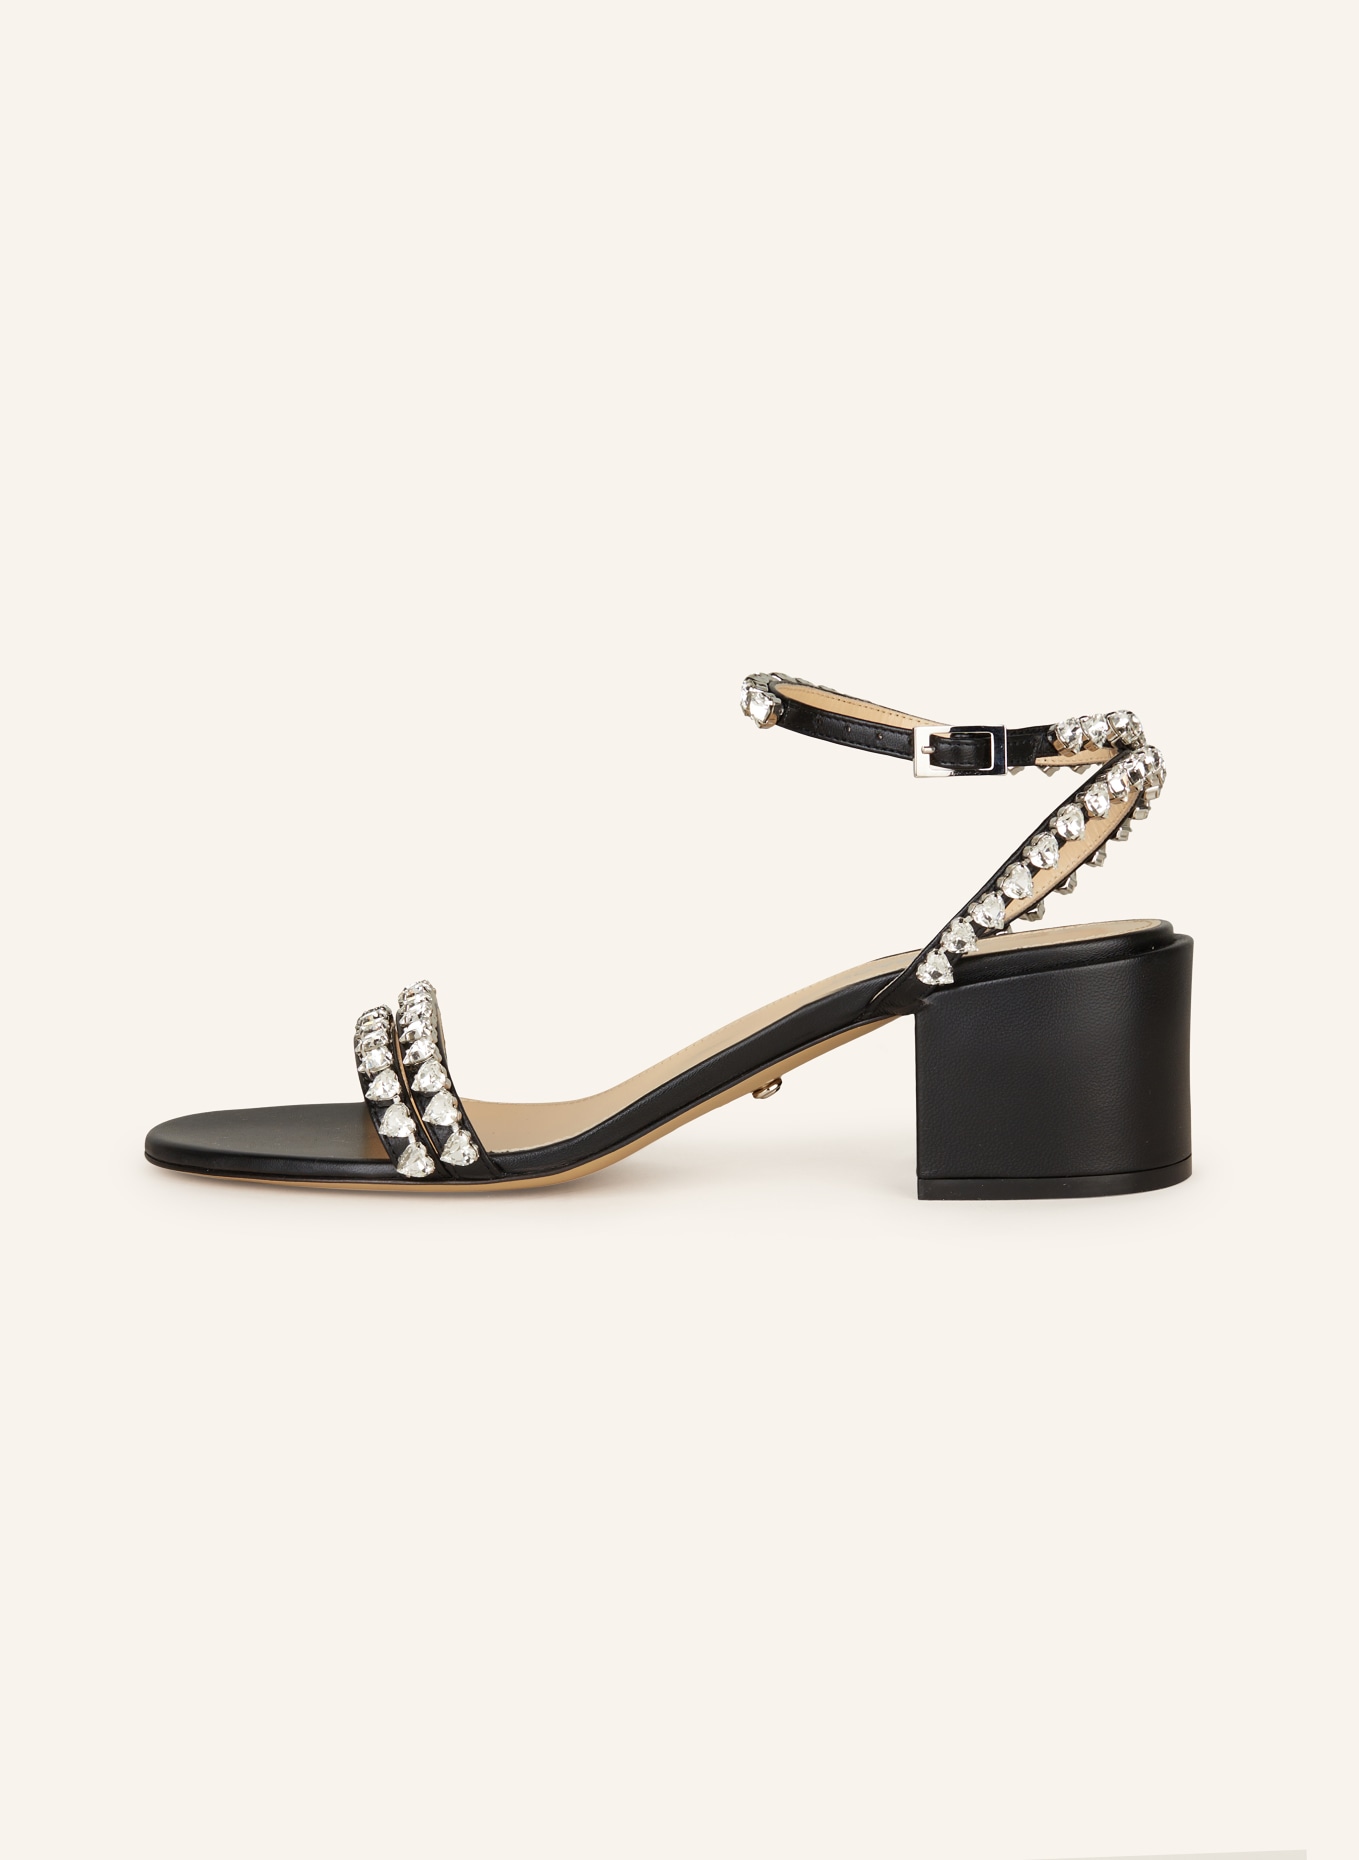 MACH & MACH Sandals AUDREY with decorative gems, Color: BLACK (Image 4)